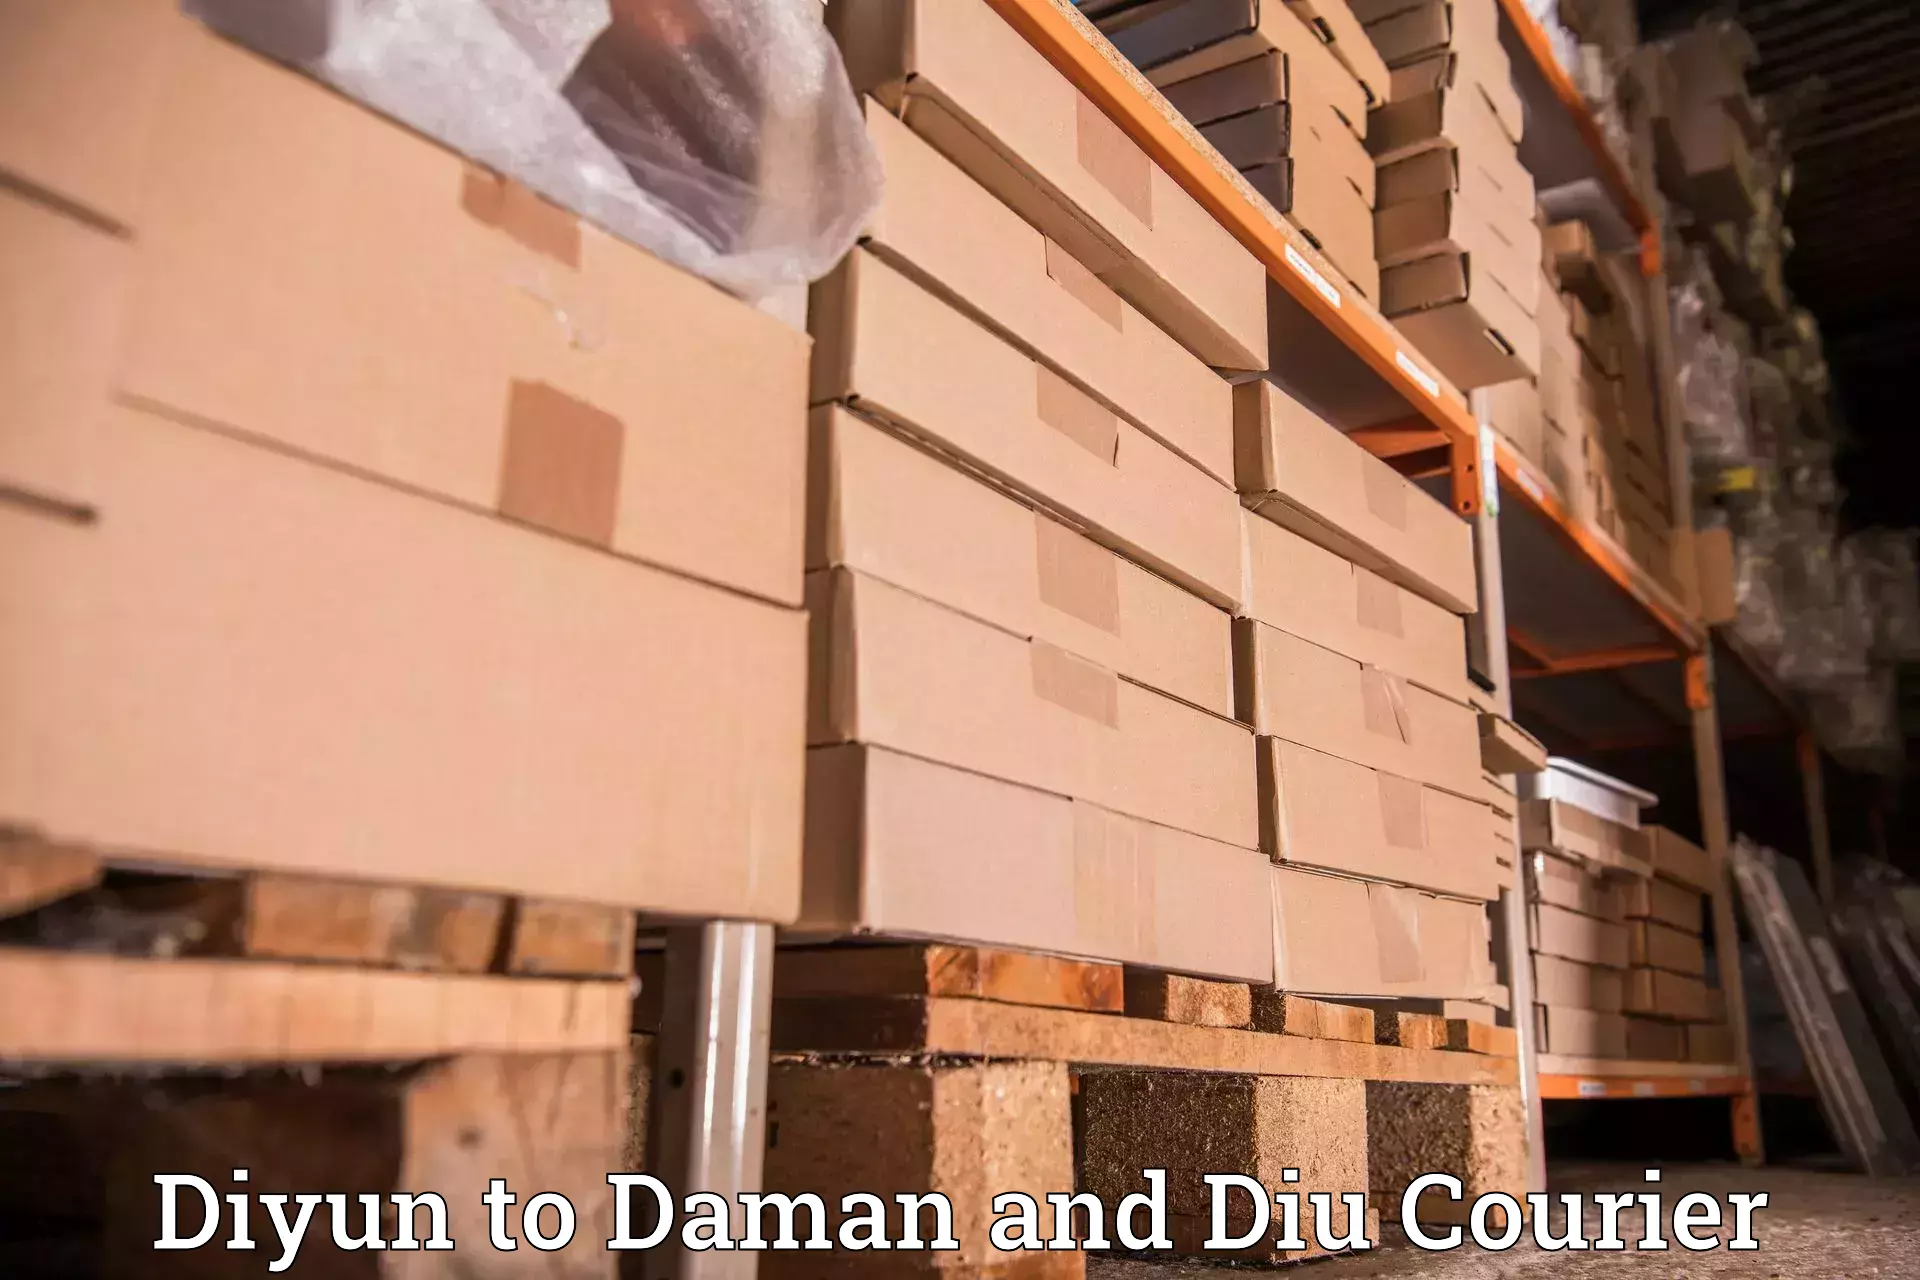 High-speed parcel service Diyun to Diu